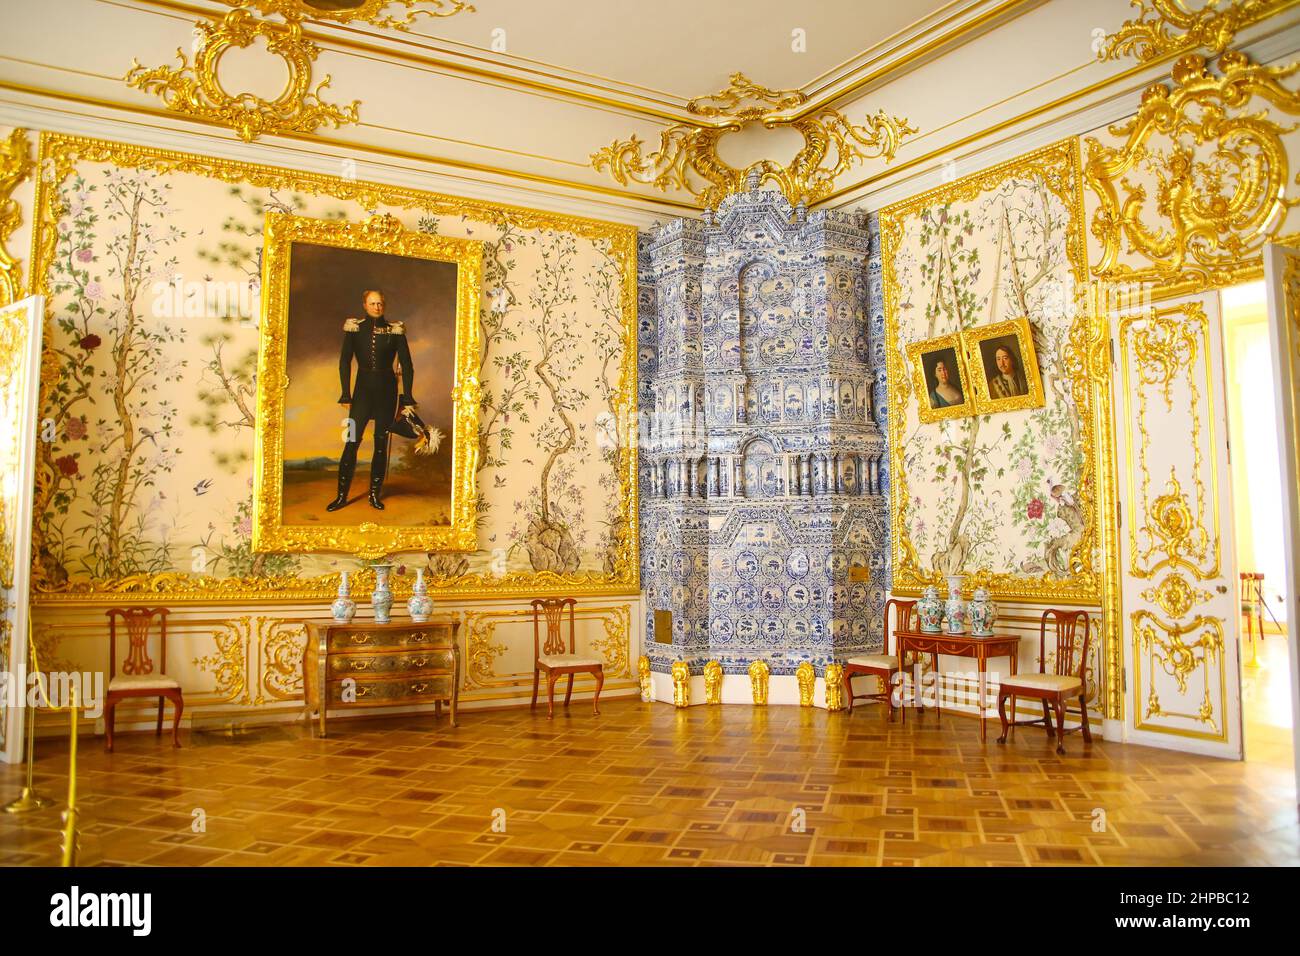 White Dining Room, Catherines Palace, Tsarskoye Selo, Russland. Weiße Wände mit Goldverzierung, mit blauem und weißem Keramik-Wasserkocher. Stockfoto